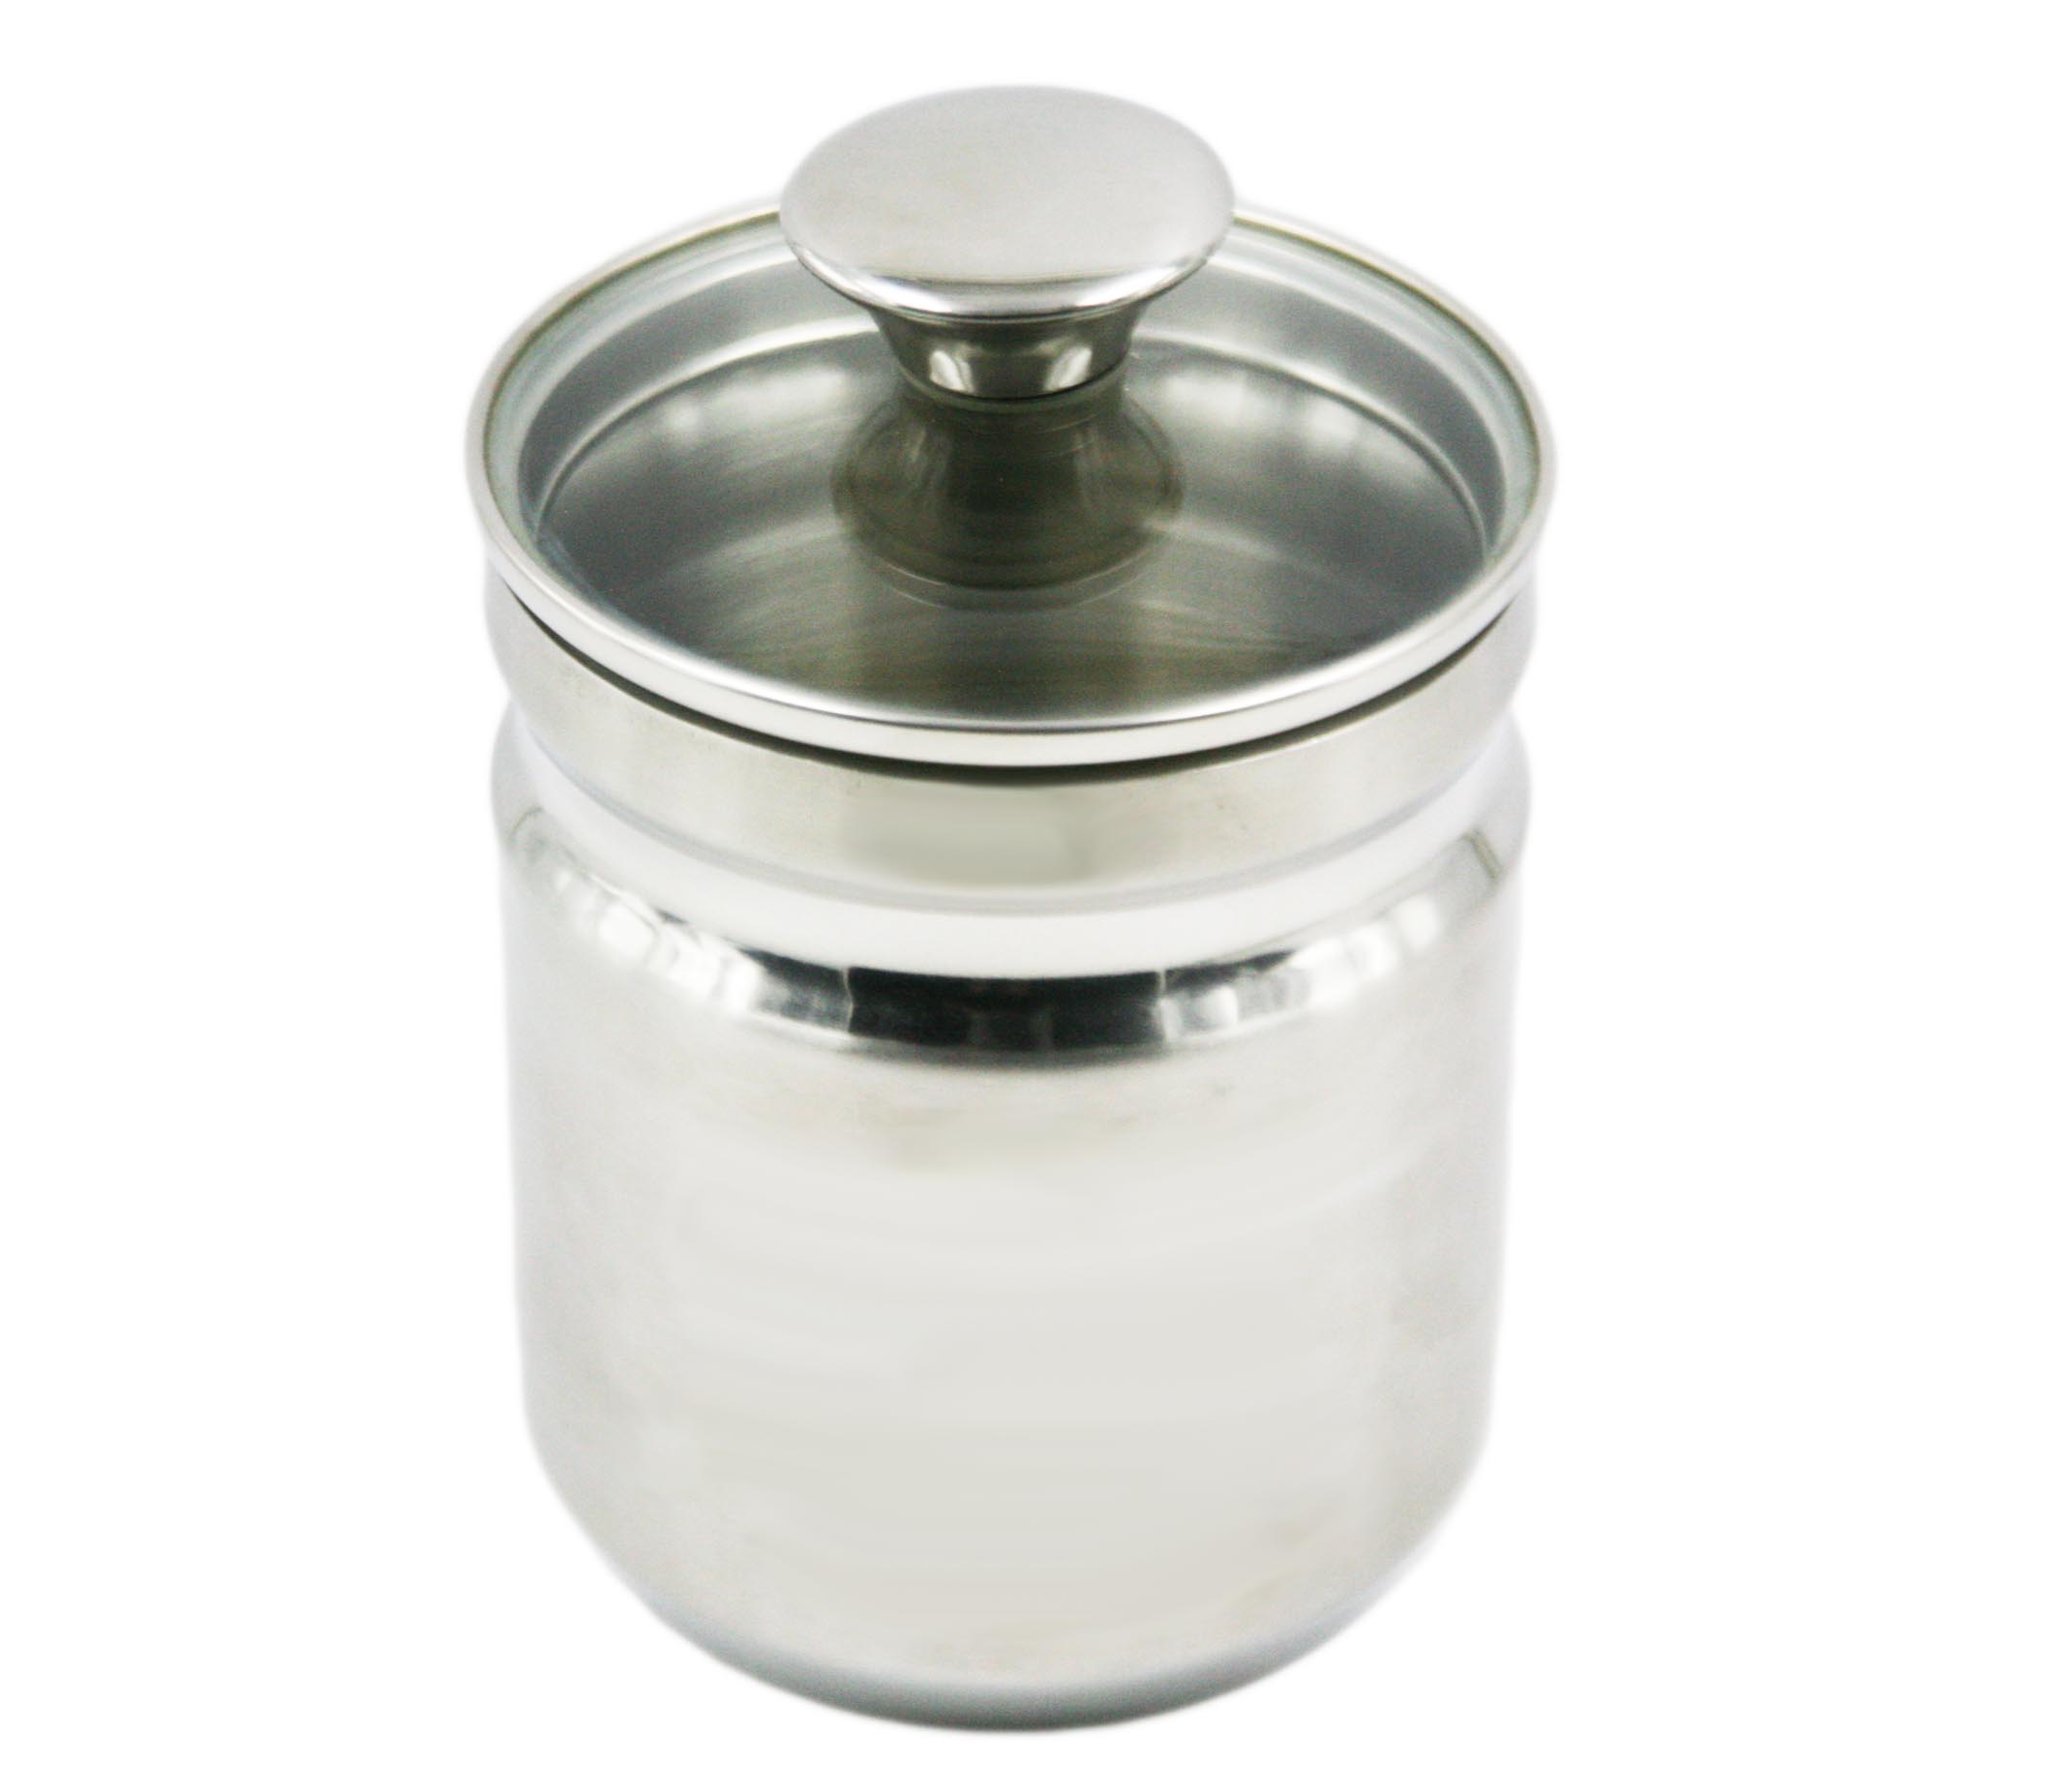 高品质不锈钢食品容器手柄盖密封罐储存瓶EB-MF023